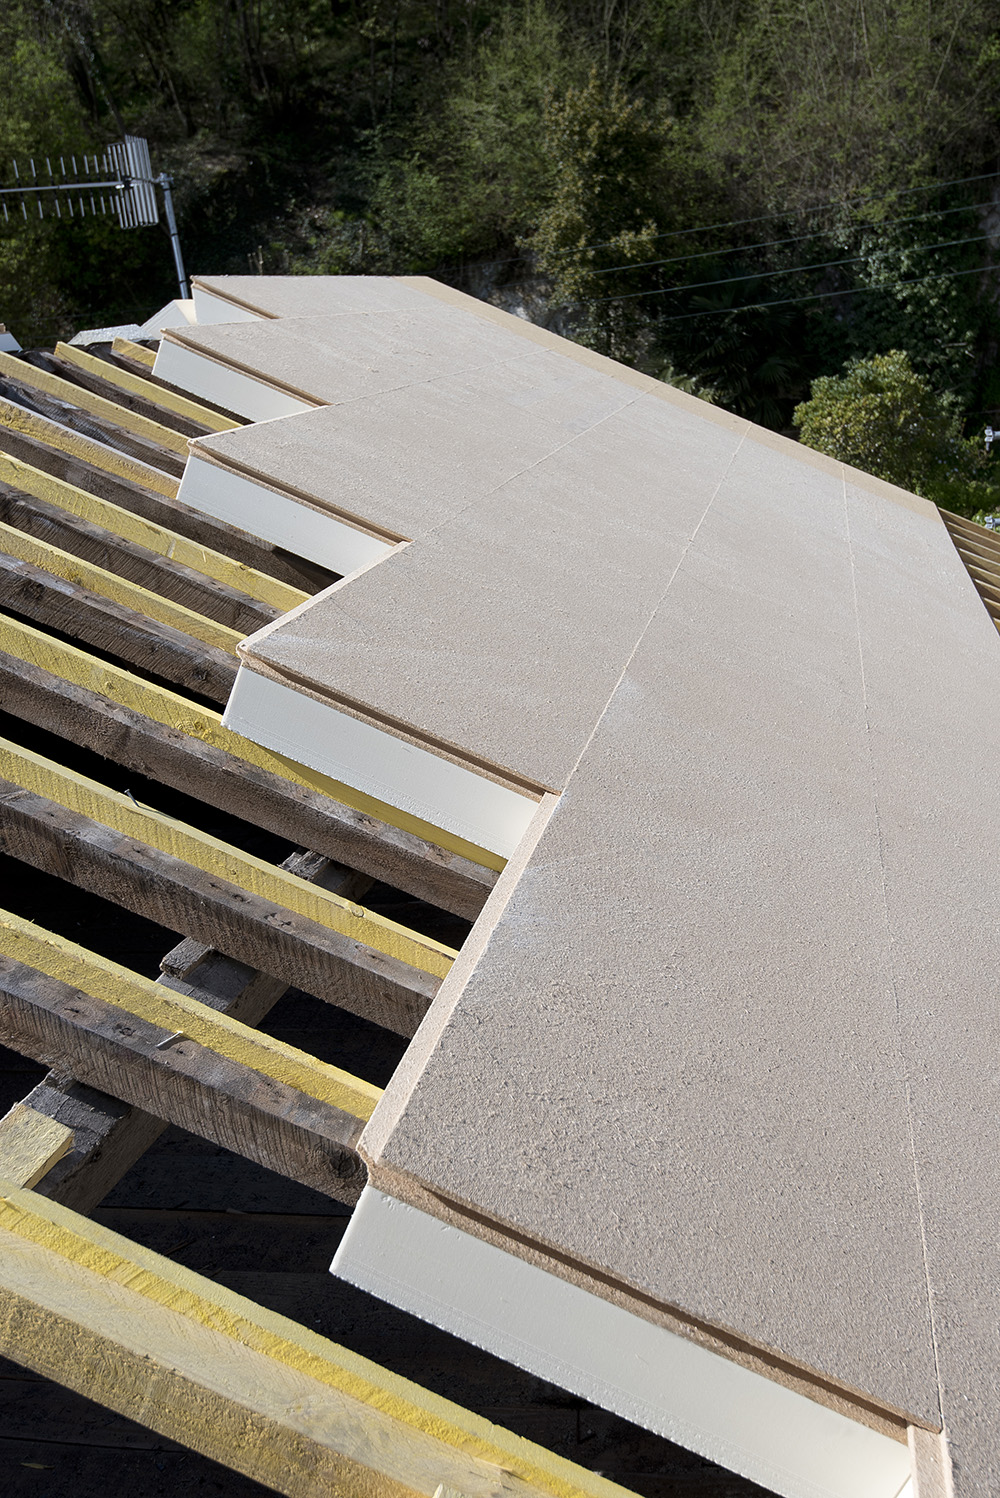 Plaque isolante bi-matière polyuréthane pir et fibre de bois pour l'isolation de la toiture en pente et le confort d'été Utherm Sarking L Comfort, neuf et rénovation